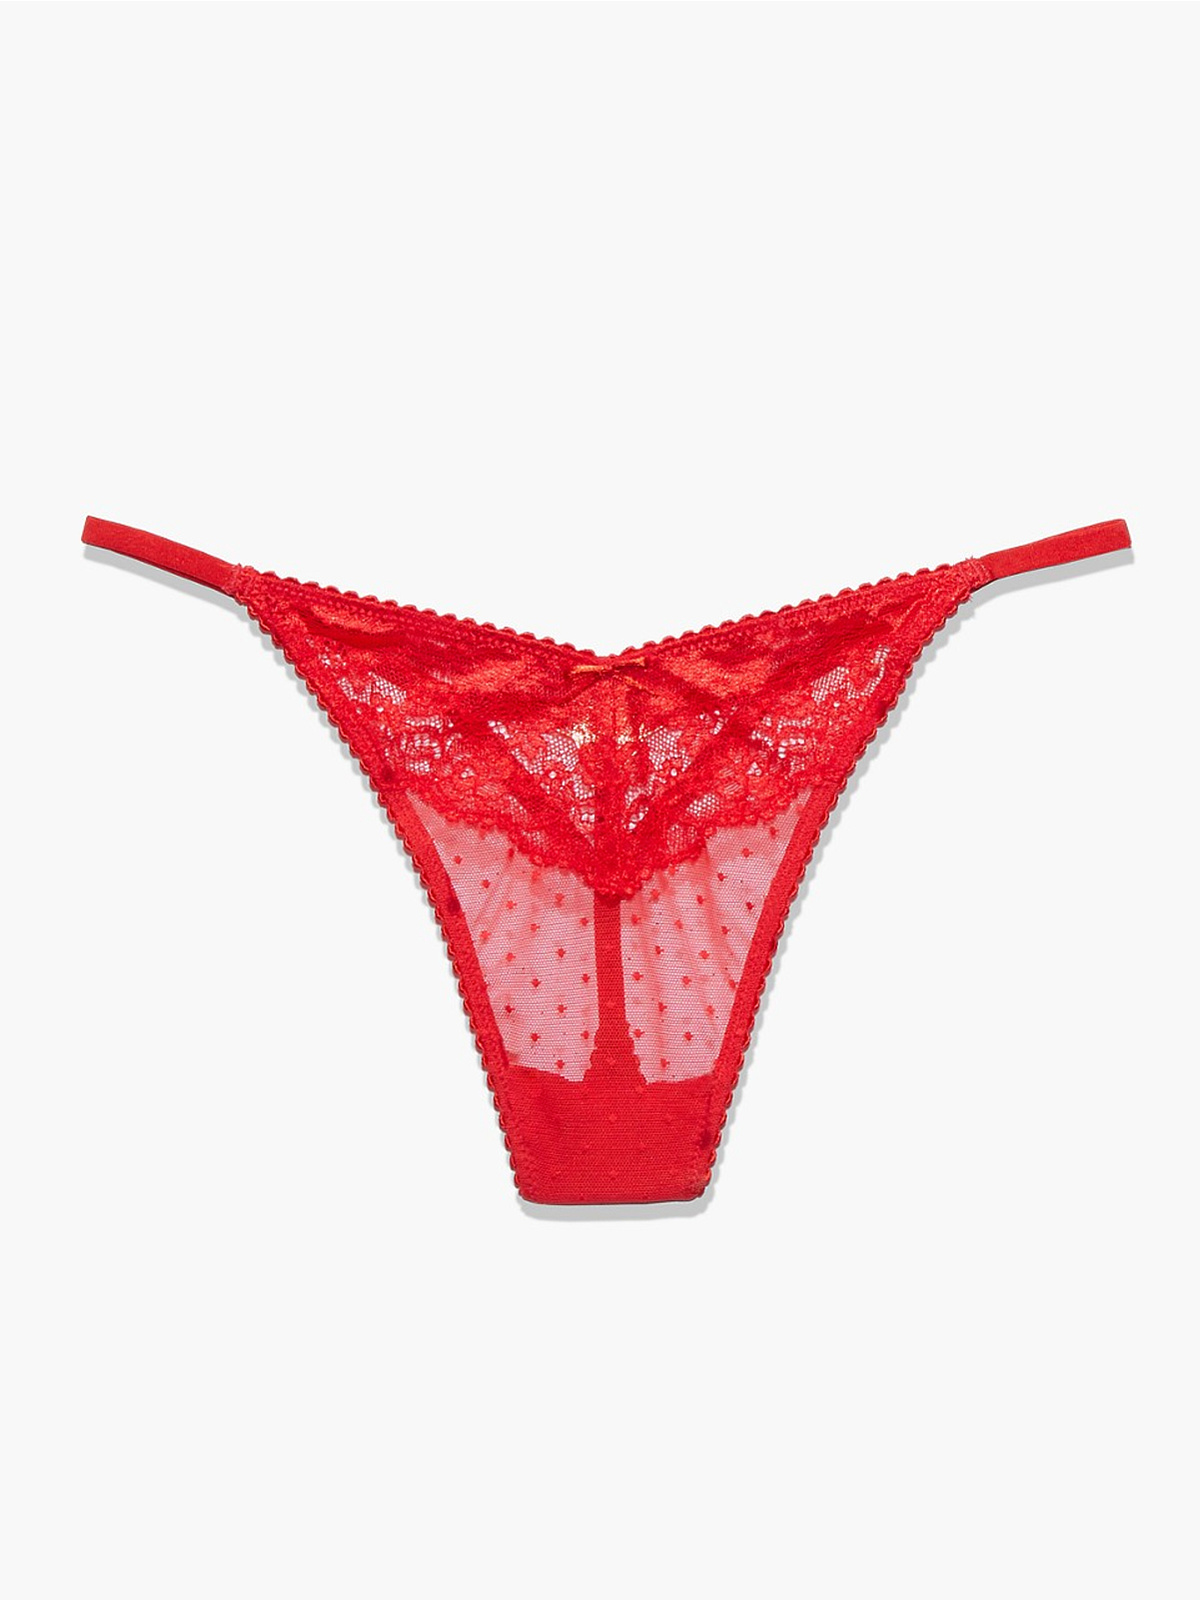 Buy Bleeding Heart Women's Red Free Size Net Lace Thongs For Women